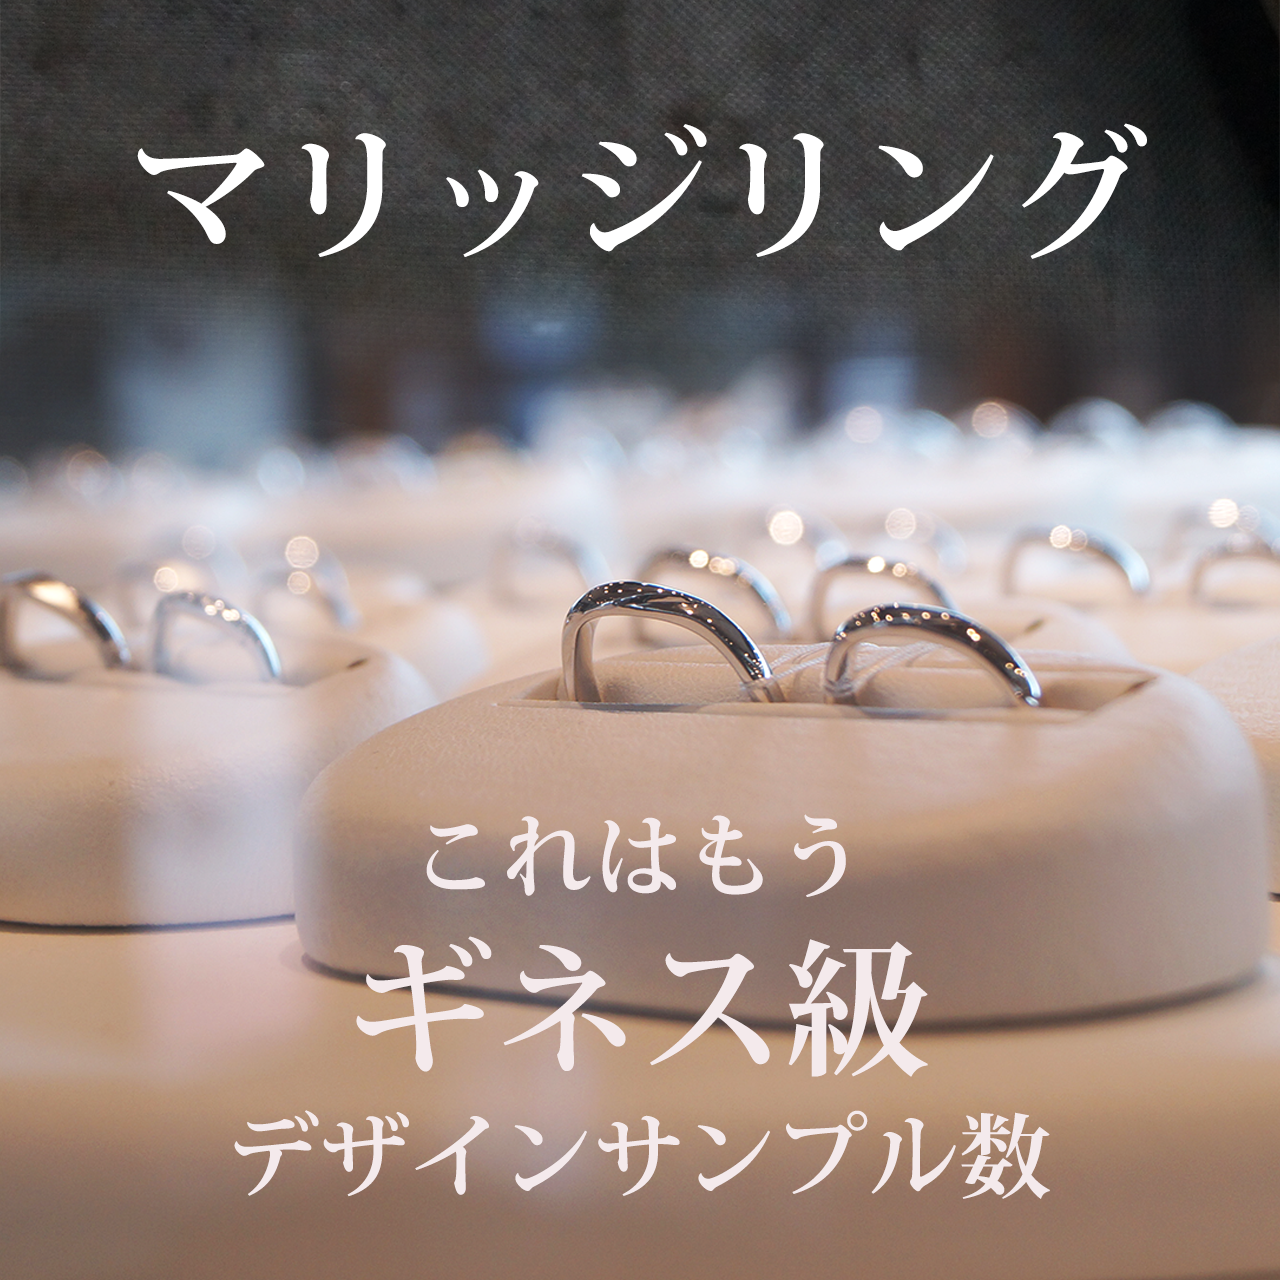 店頭には結婚指輪のギネス級のたくさんのサンプルリングがずらっと並んでいます